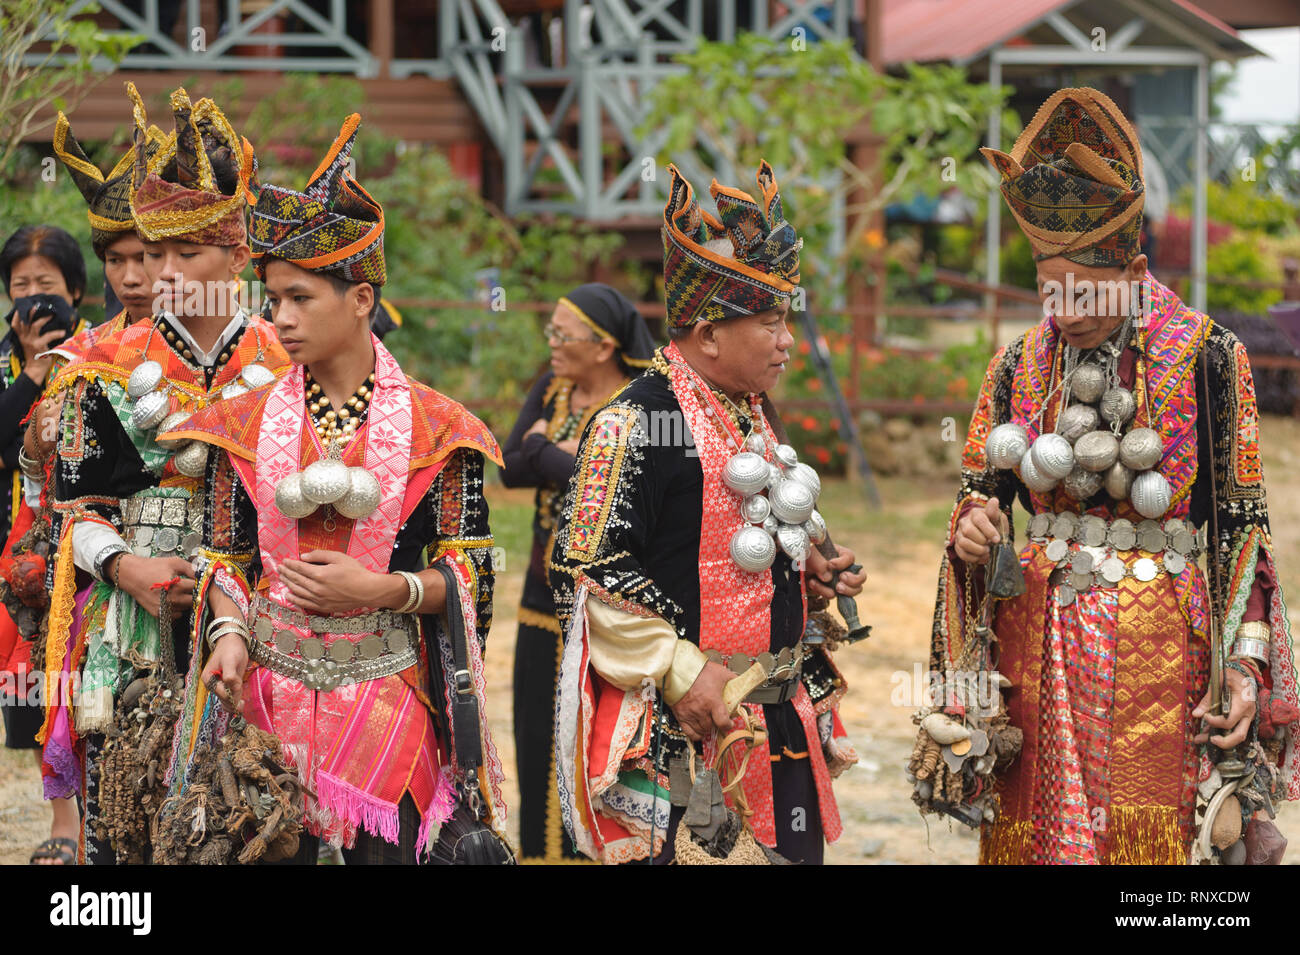 Kundasang Sabah, Malaysia - Apr 3, 2015: Dusun ethnischen Schamane Vollführung ritueller der Geist des Akinabalu Hüter des Mount Kinabalu zu beschwichtigen. Stockfoto